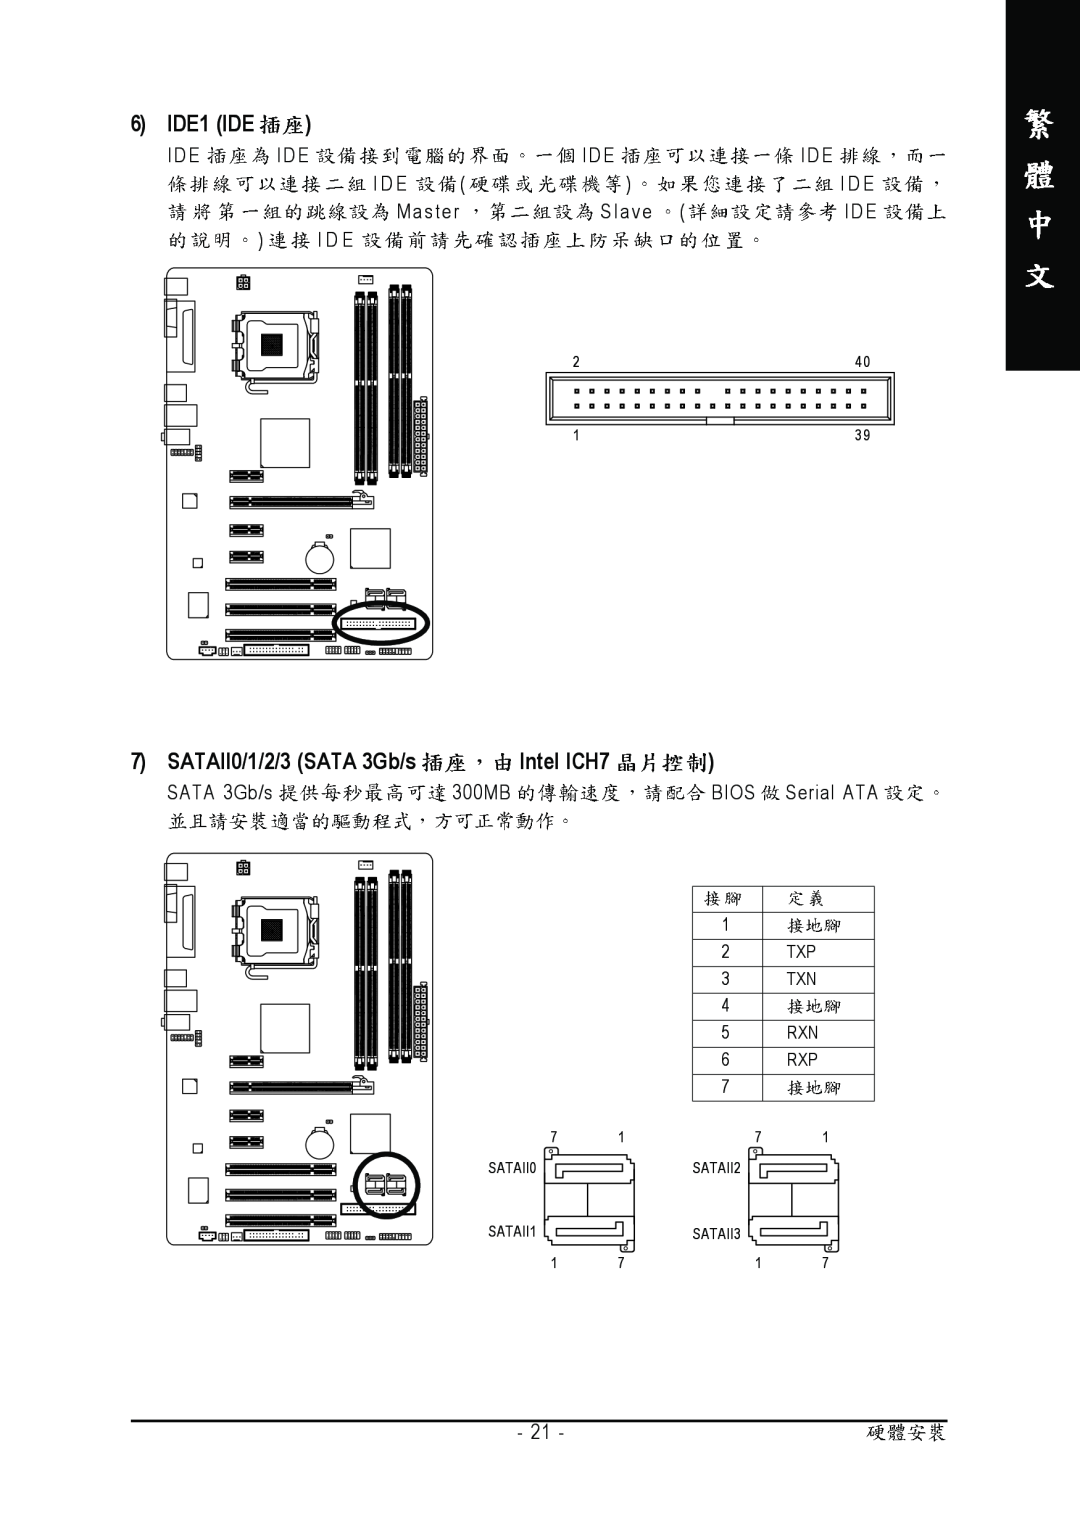 Intel GA-945P-S3 manual 6 IDE1 IDE, SATAII0/1/2/3 SATA 3Gb/s Intel ICH7, IDE IDE IDE IDE I D E I D E Master Slave IDE I D E 